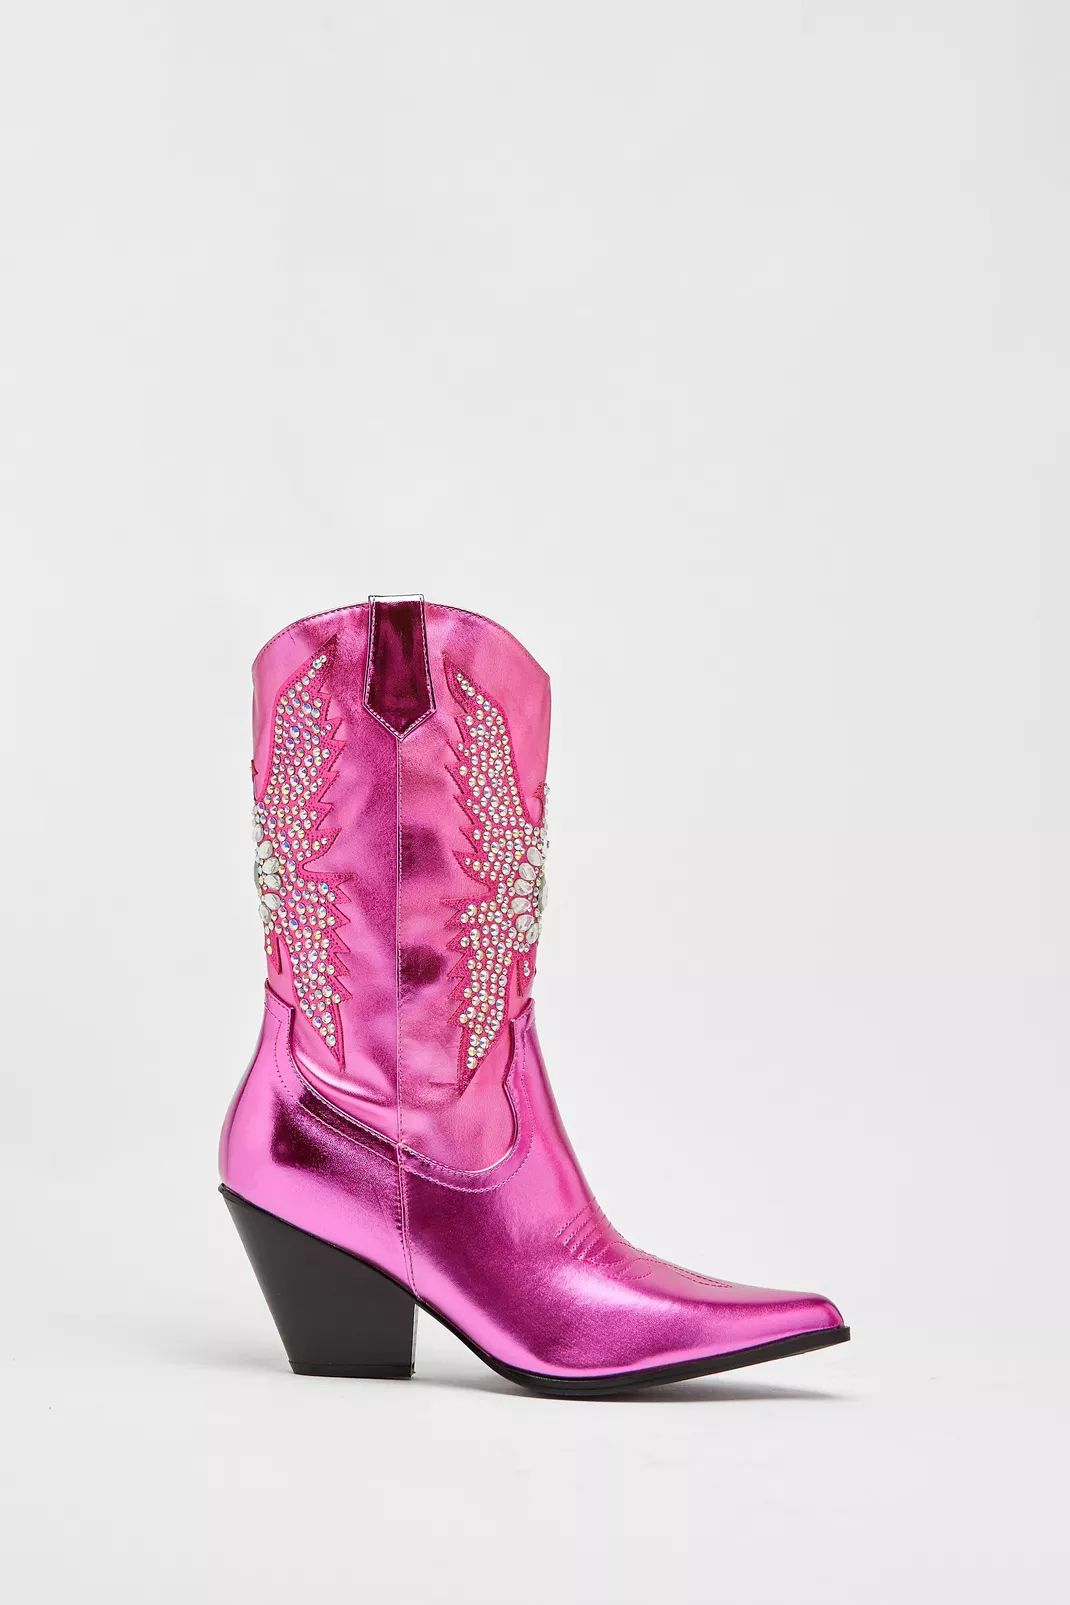 Metallic Embellished Western Boots | Nasty Gal US